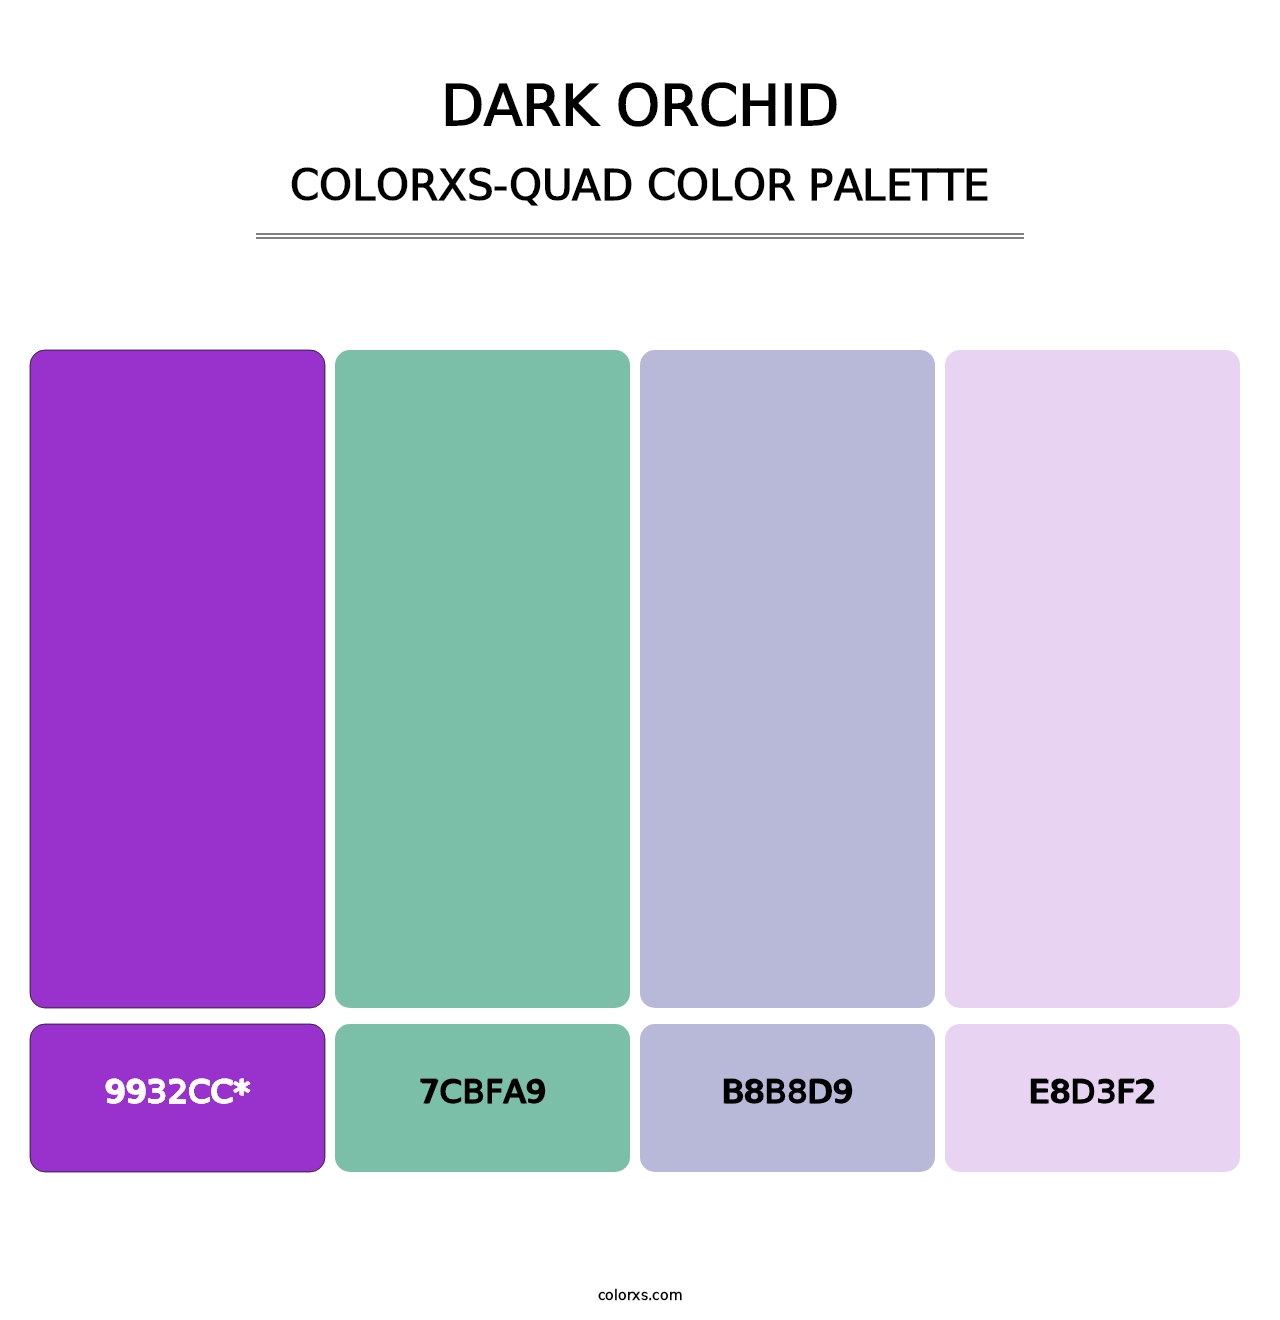 Dark Orchid - Colorxs Quad Palette